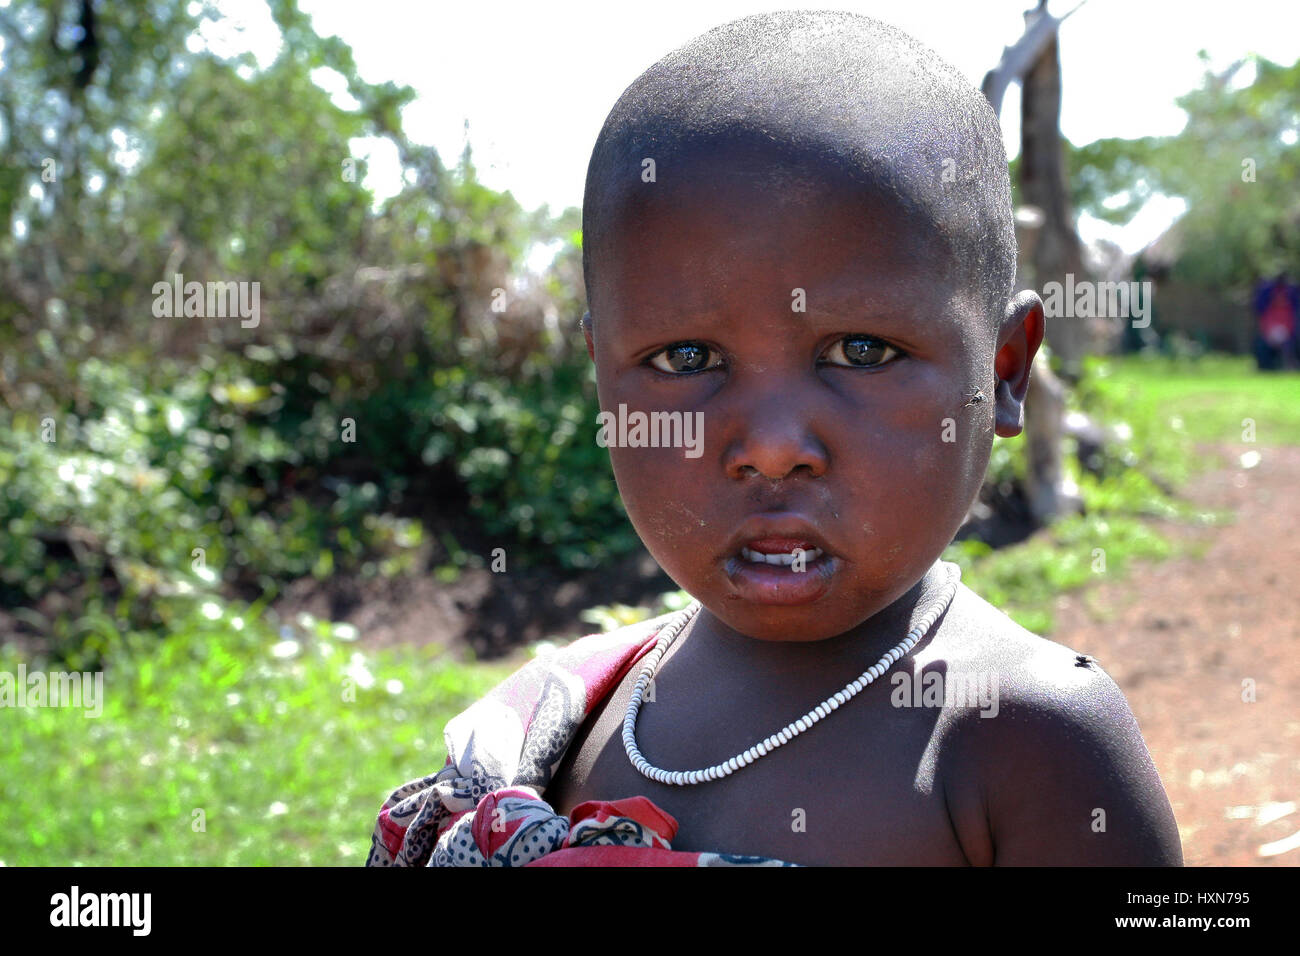 Meserani Snake Park, Arusha, Tansania - 14. Februar 2008: Unbekannte schwarze afrikanische Kind des Stammes Maasai, etwa 4 Jahre alt, close-up Portrait. Stockfoto